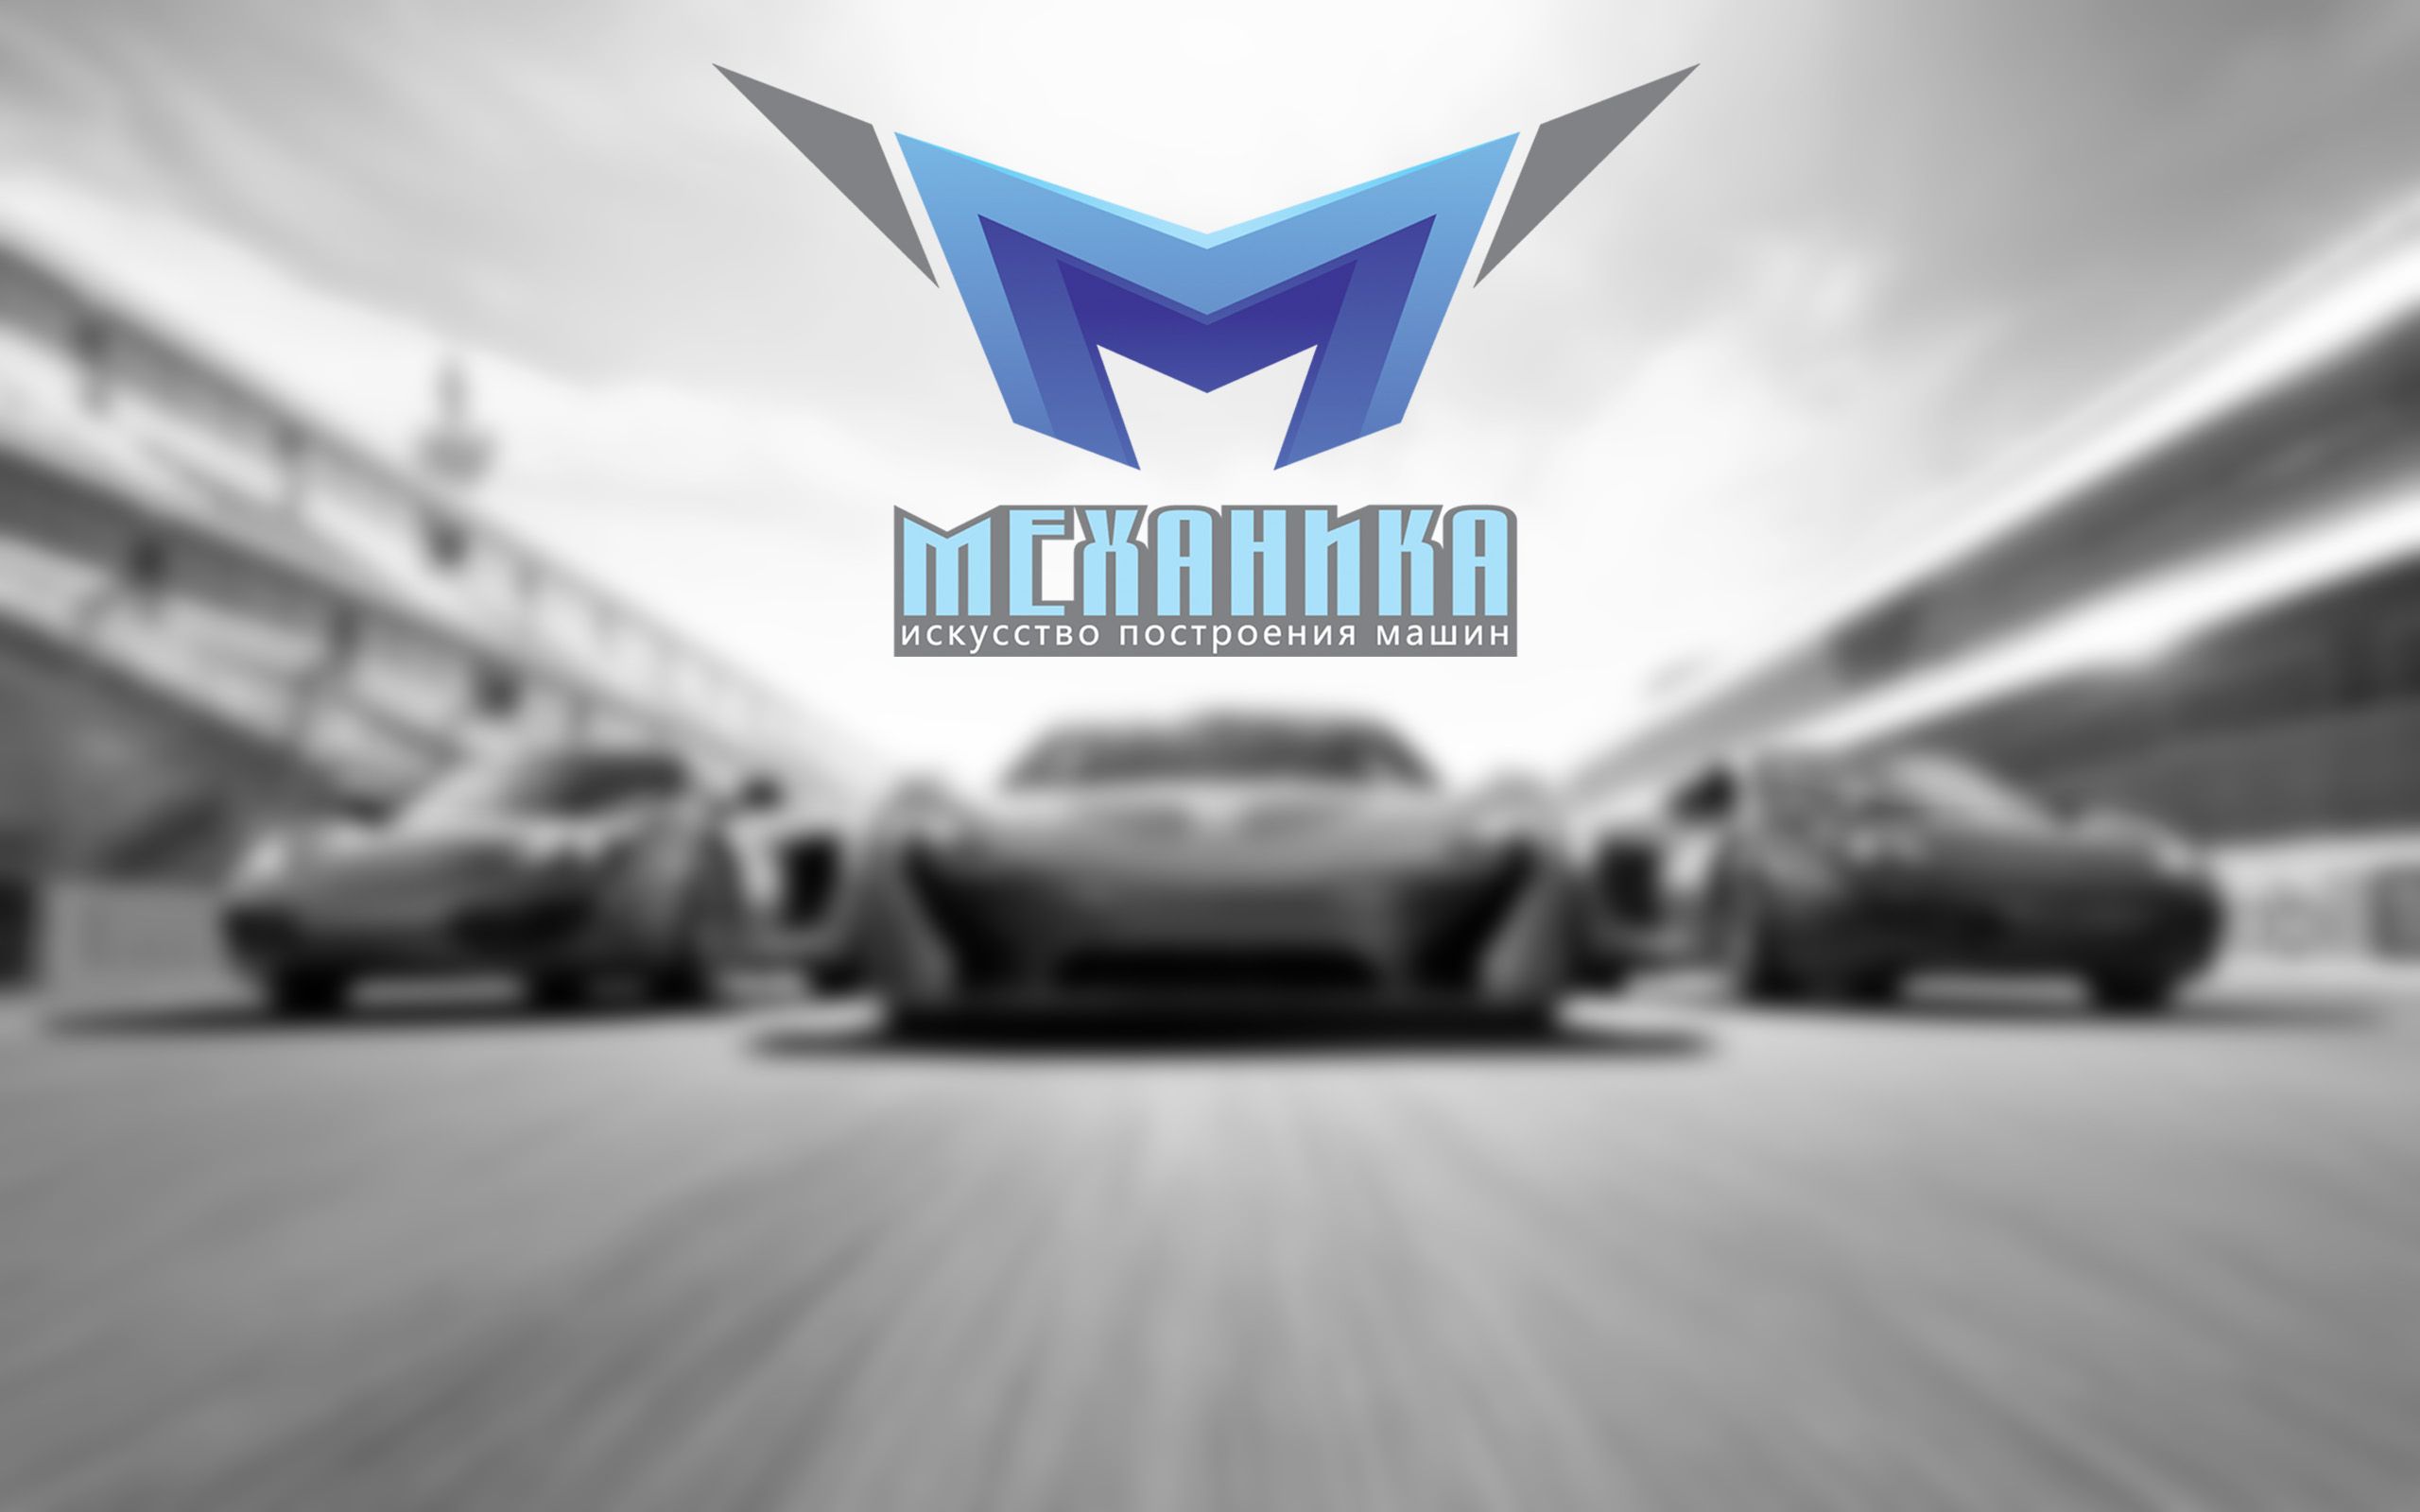 Логотип для магазина автозапчасти 'Механика' - дизайнер mrtigran1990